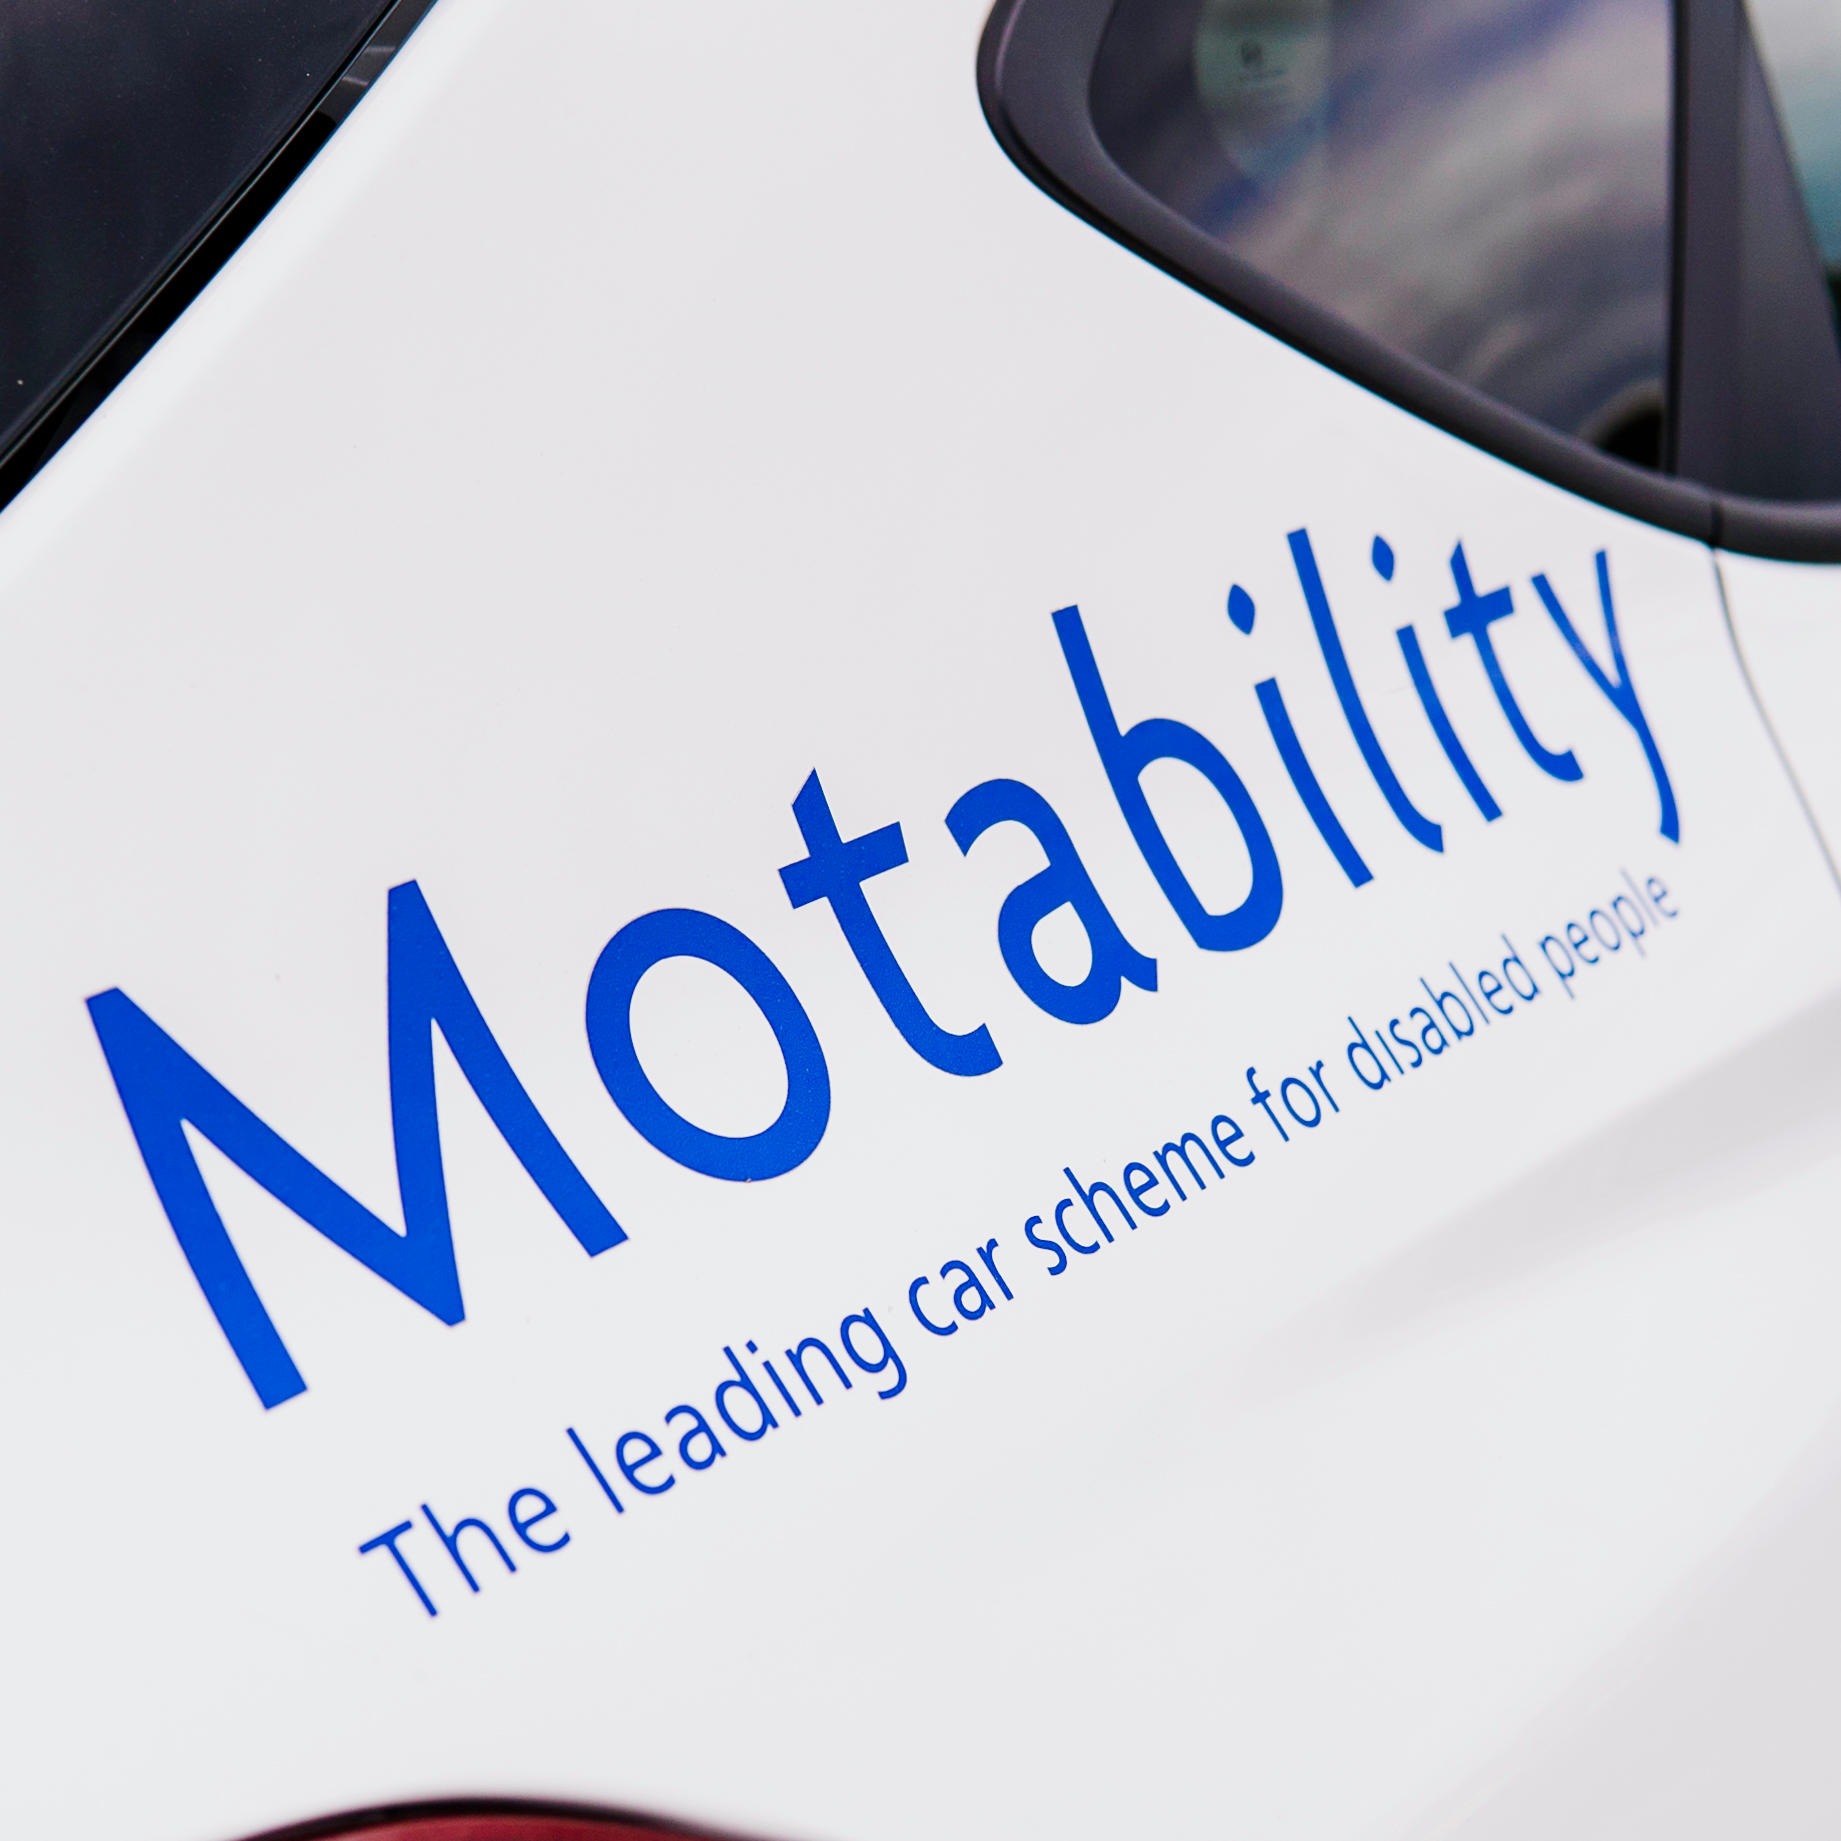 Motability Scheme at SG Petch Mazda Sunderland